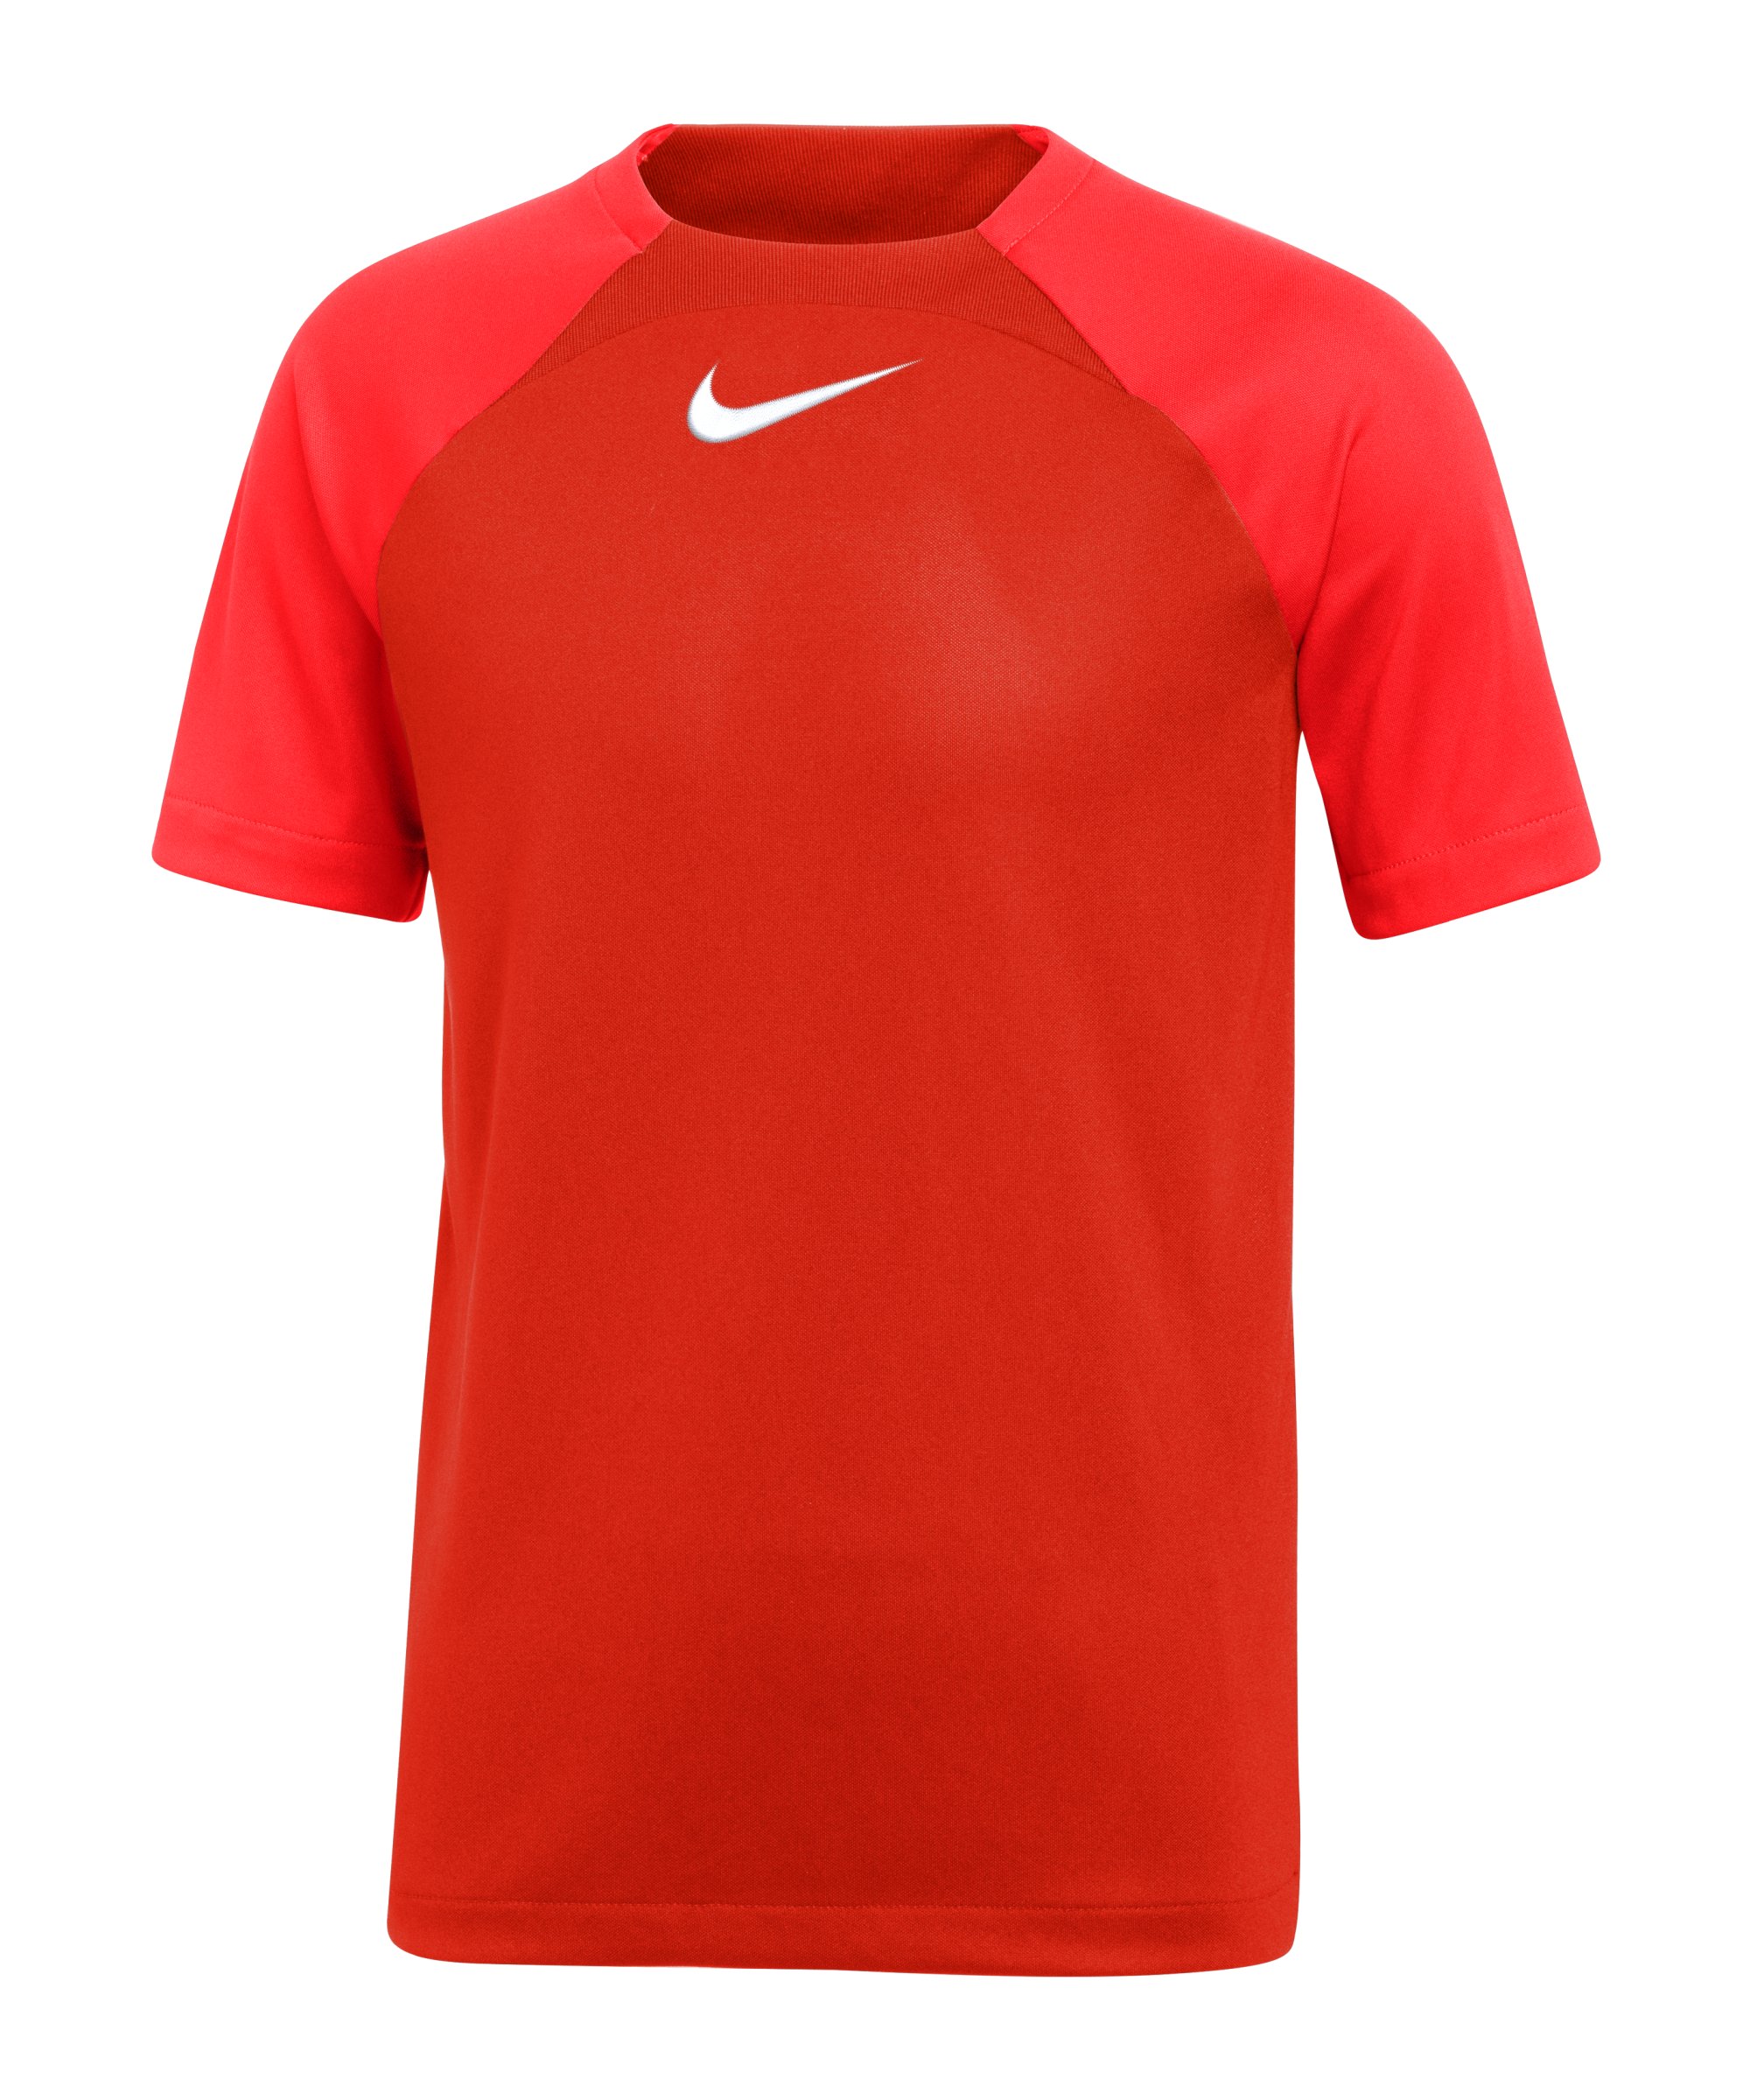 Nike Academy Pro Dri-FIT T-Shirt Kids Rot F657 - rot